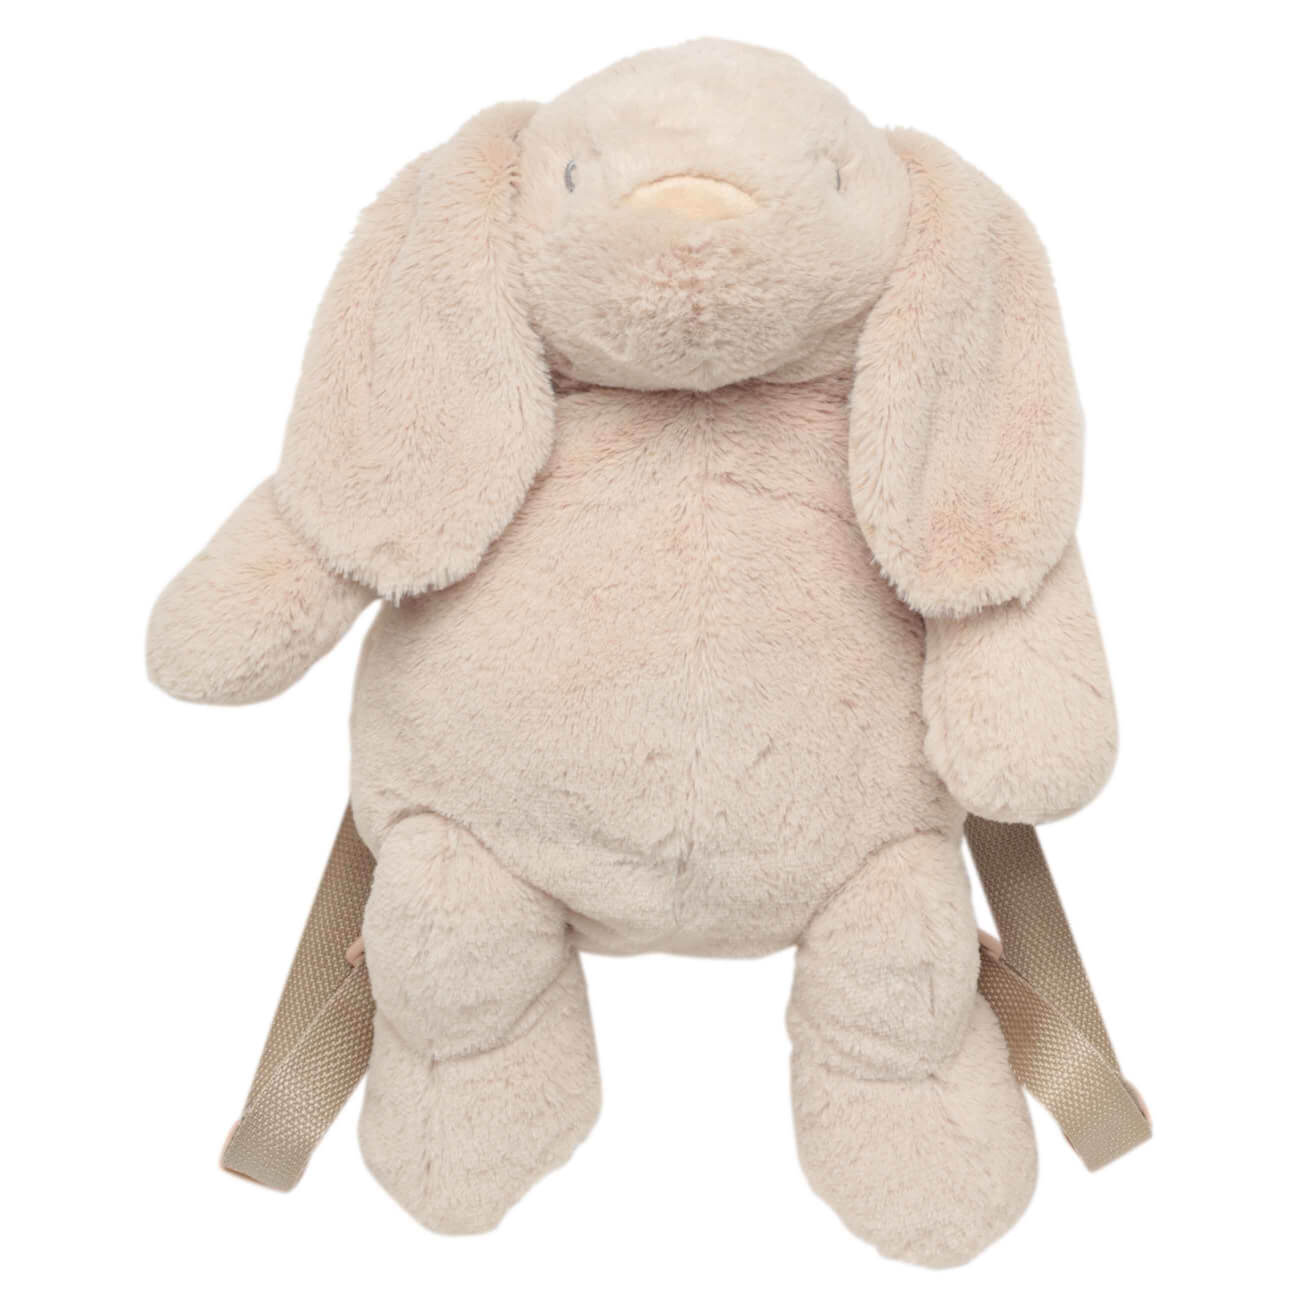 Рюкзак, 40х26 см, детский, плюш, бежевый, Зайка, Rabbit мягкая игрушка зайка снежок с длинными ушами в шарфе 20 см